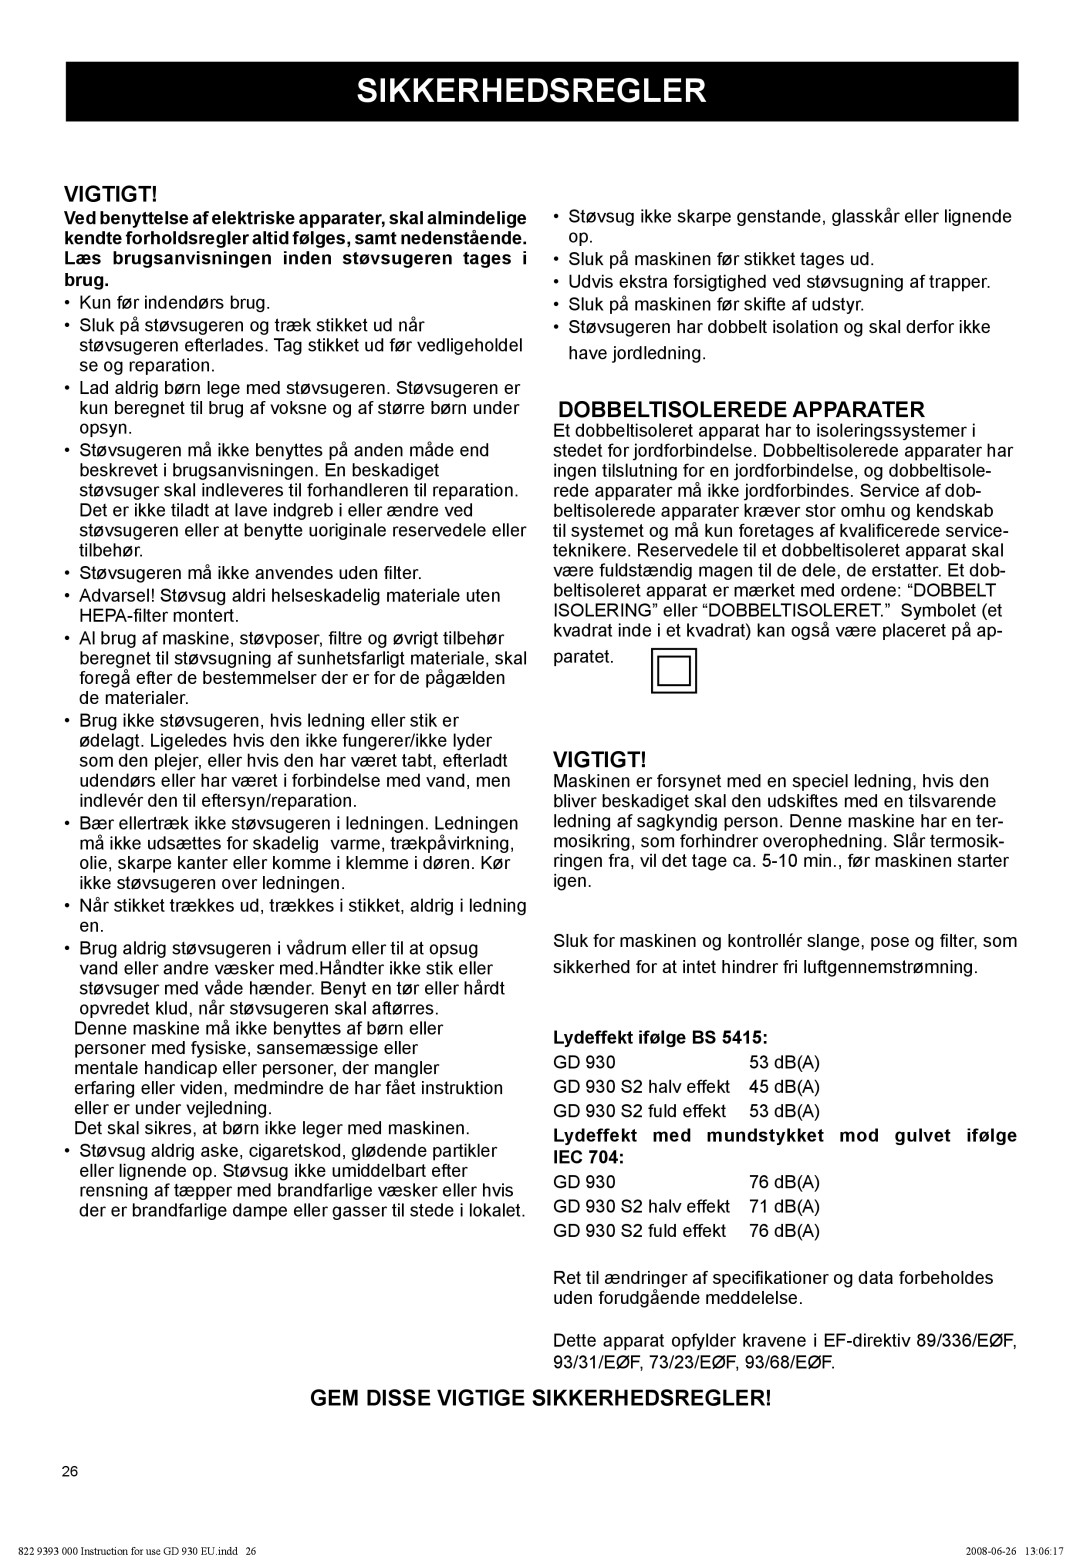 Nilfisk-Advance America GD 930S2 manual Vigtigt, Dobbeltisolerede Apparater, Gem Disse Vigtige Sikkerhedsregler 